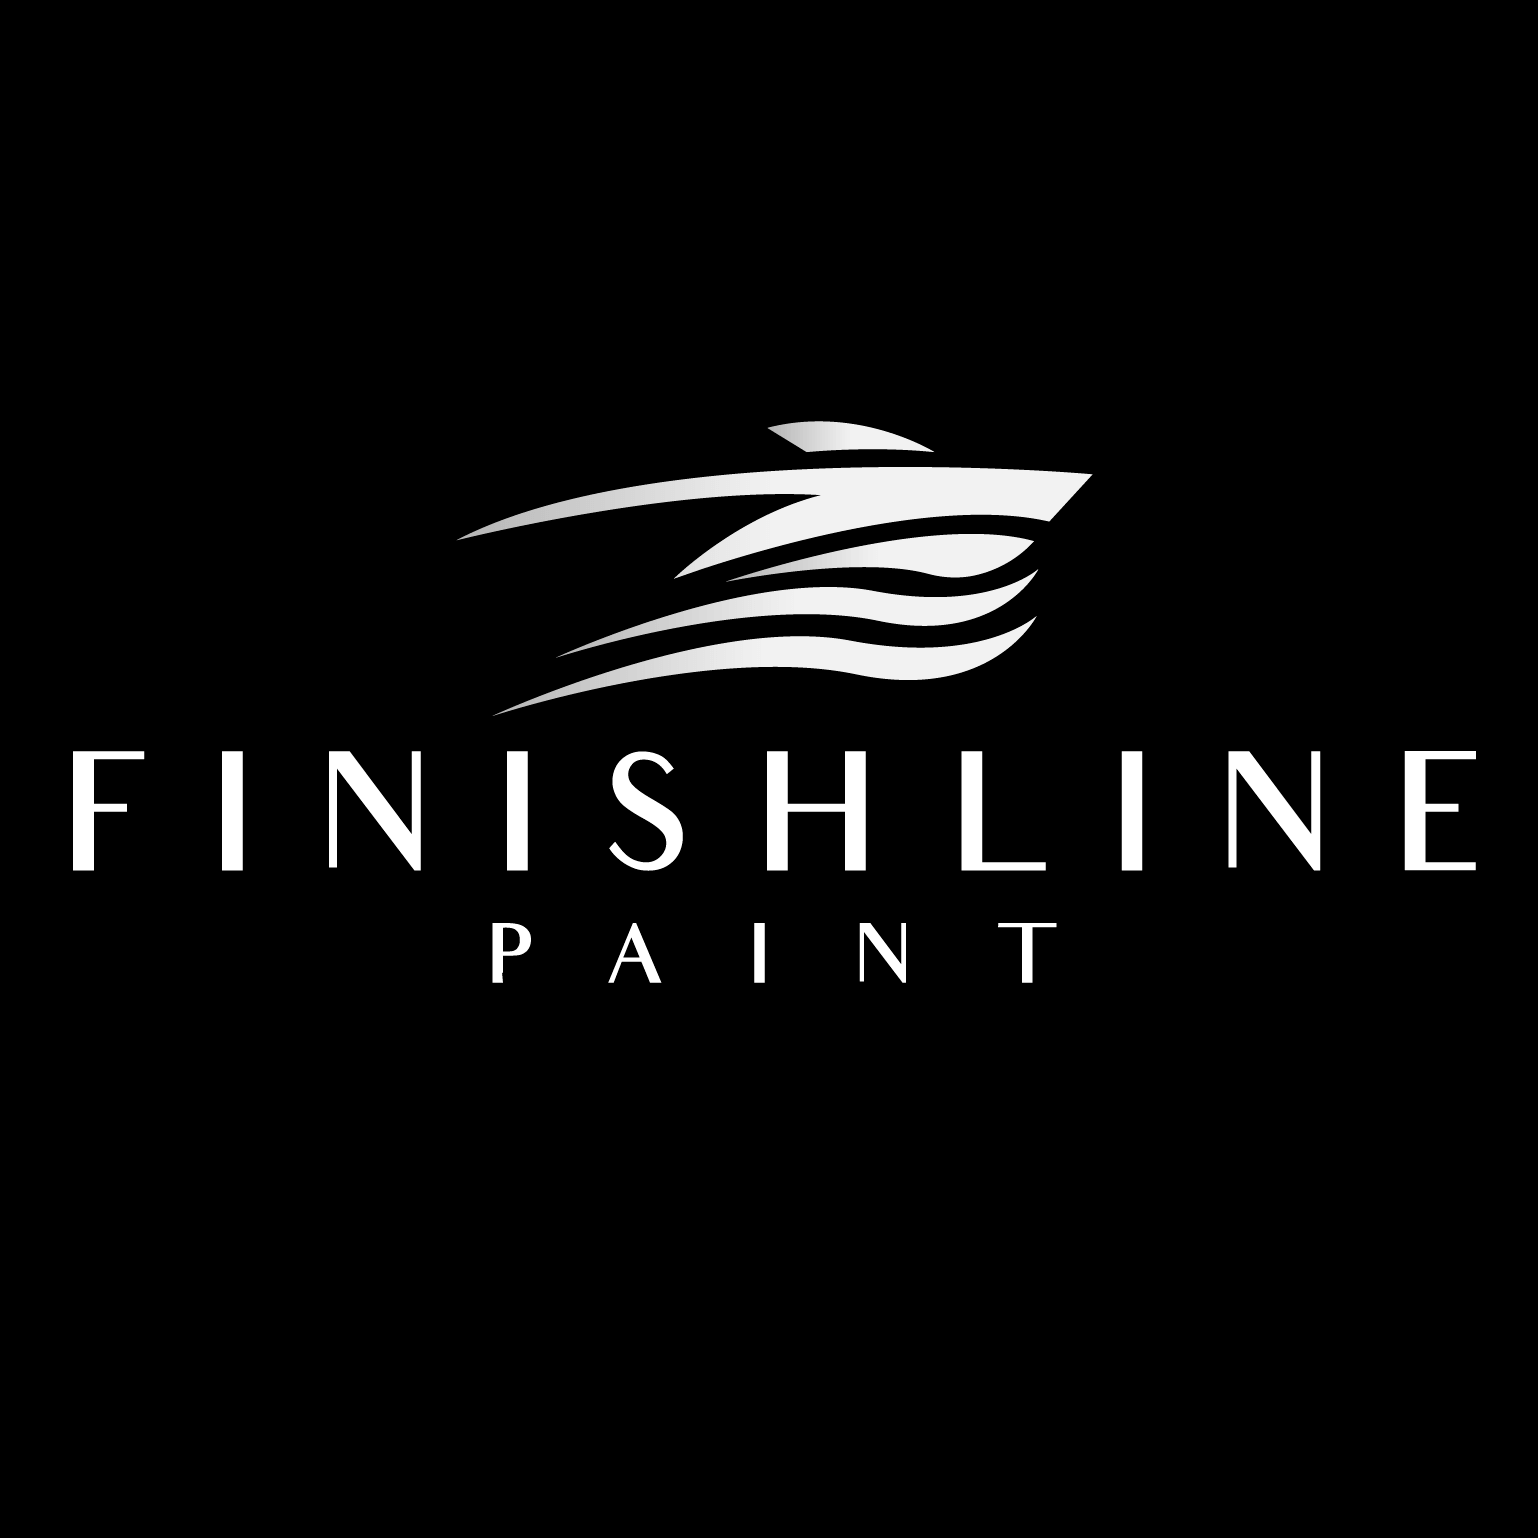 Finishline Paint